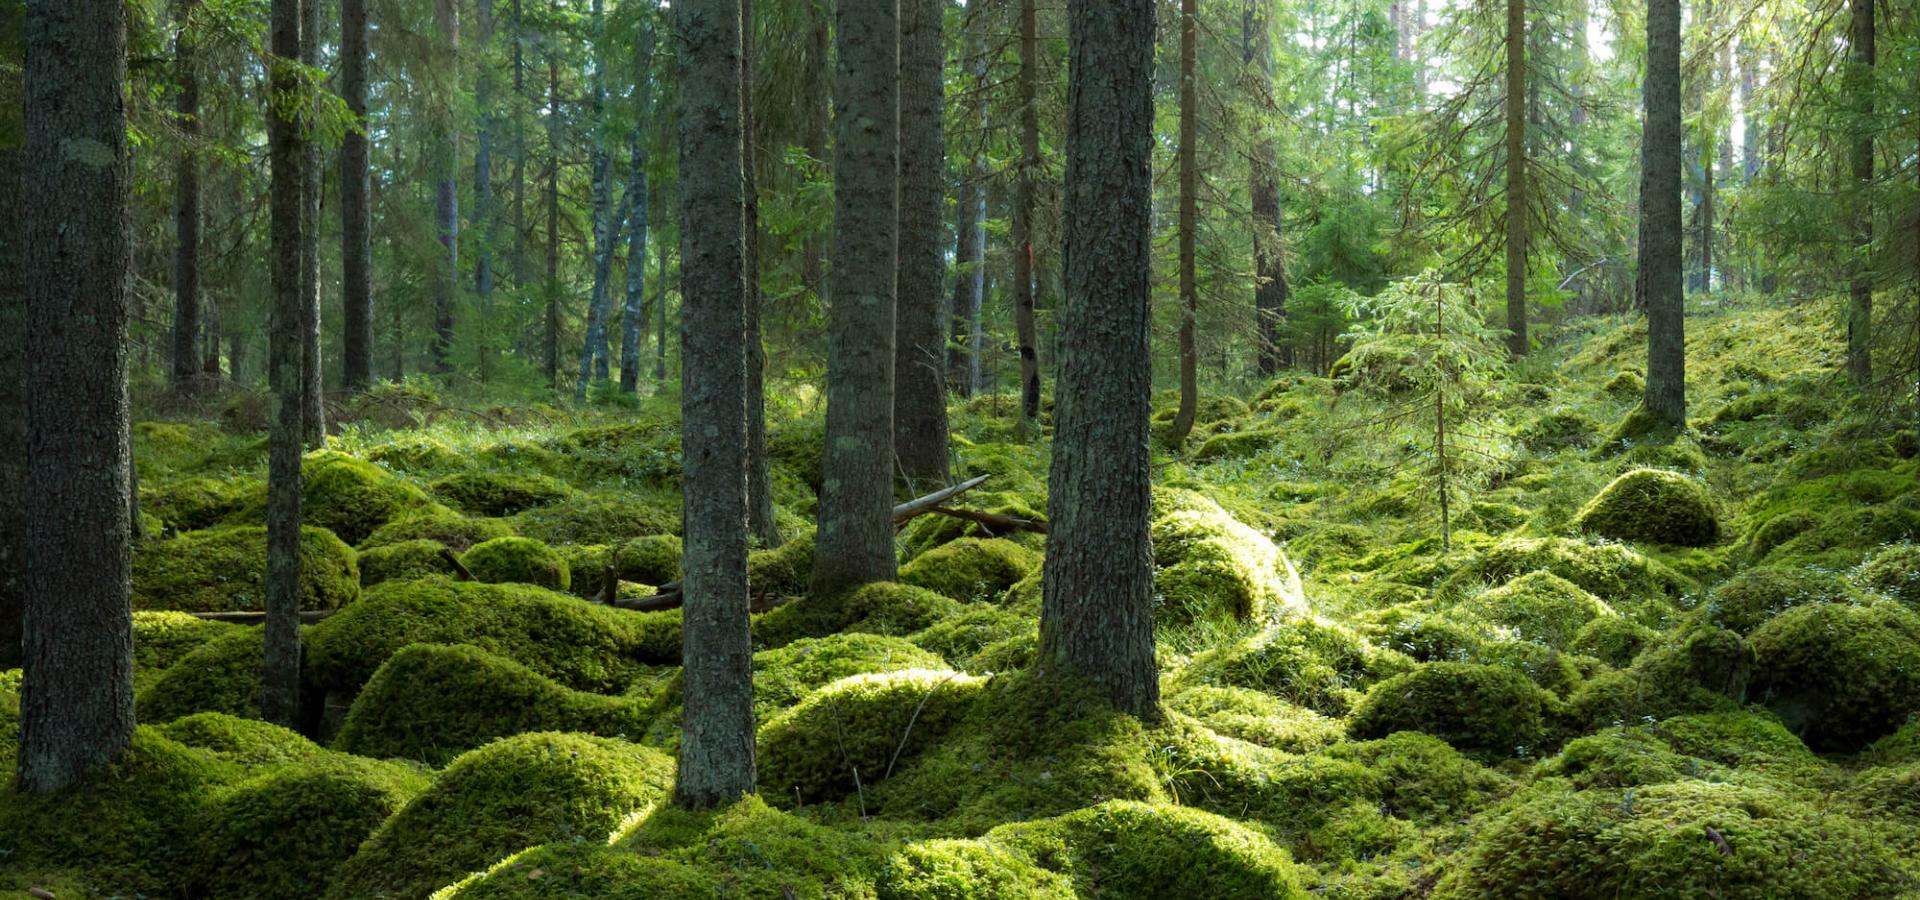 Trollskog, grön härlig mossa på stenar i den djupa gröna skogen